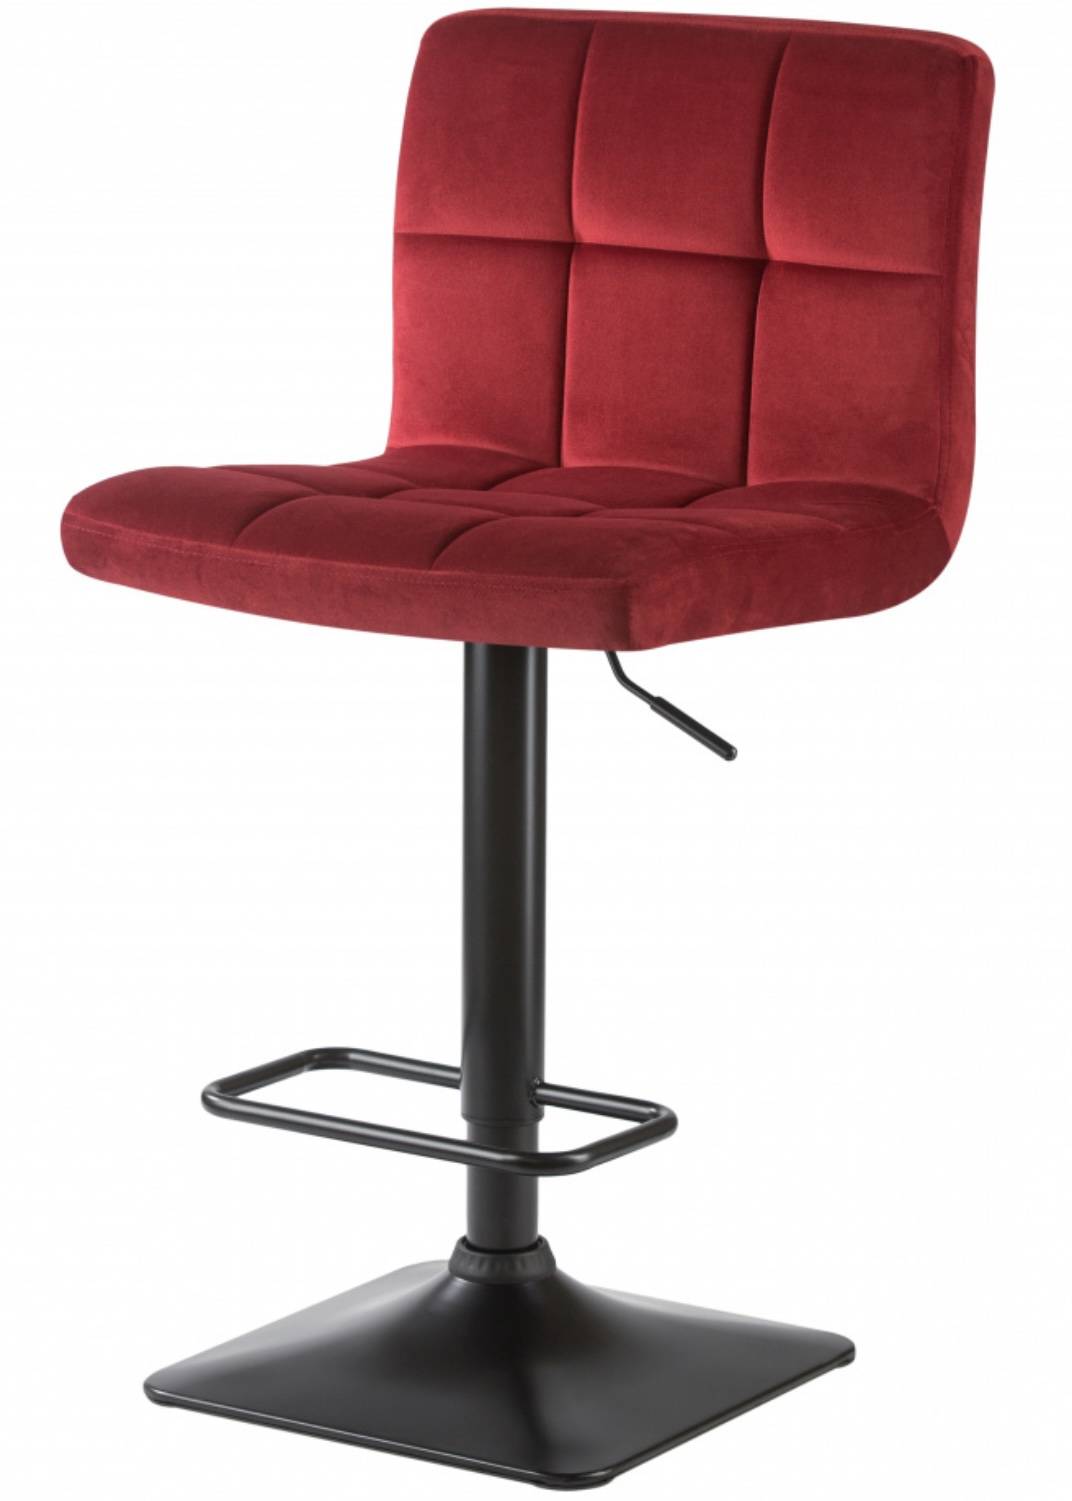 Купить красный стул Dominic в romanta.ru